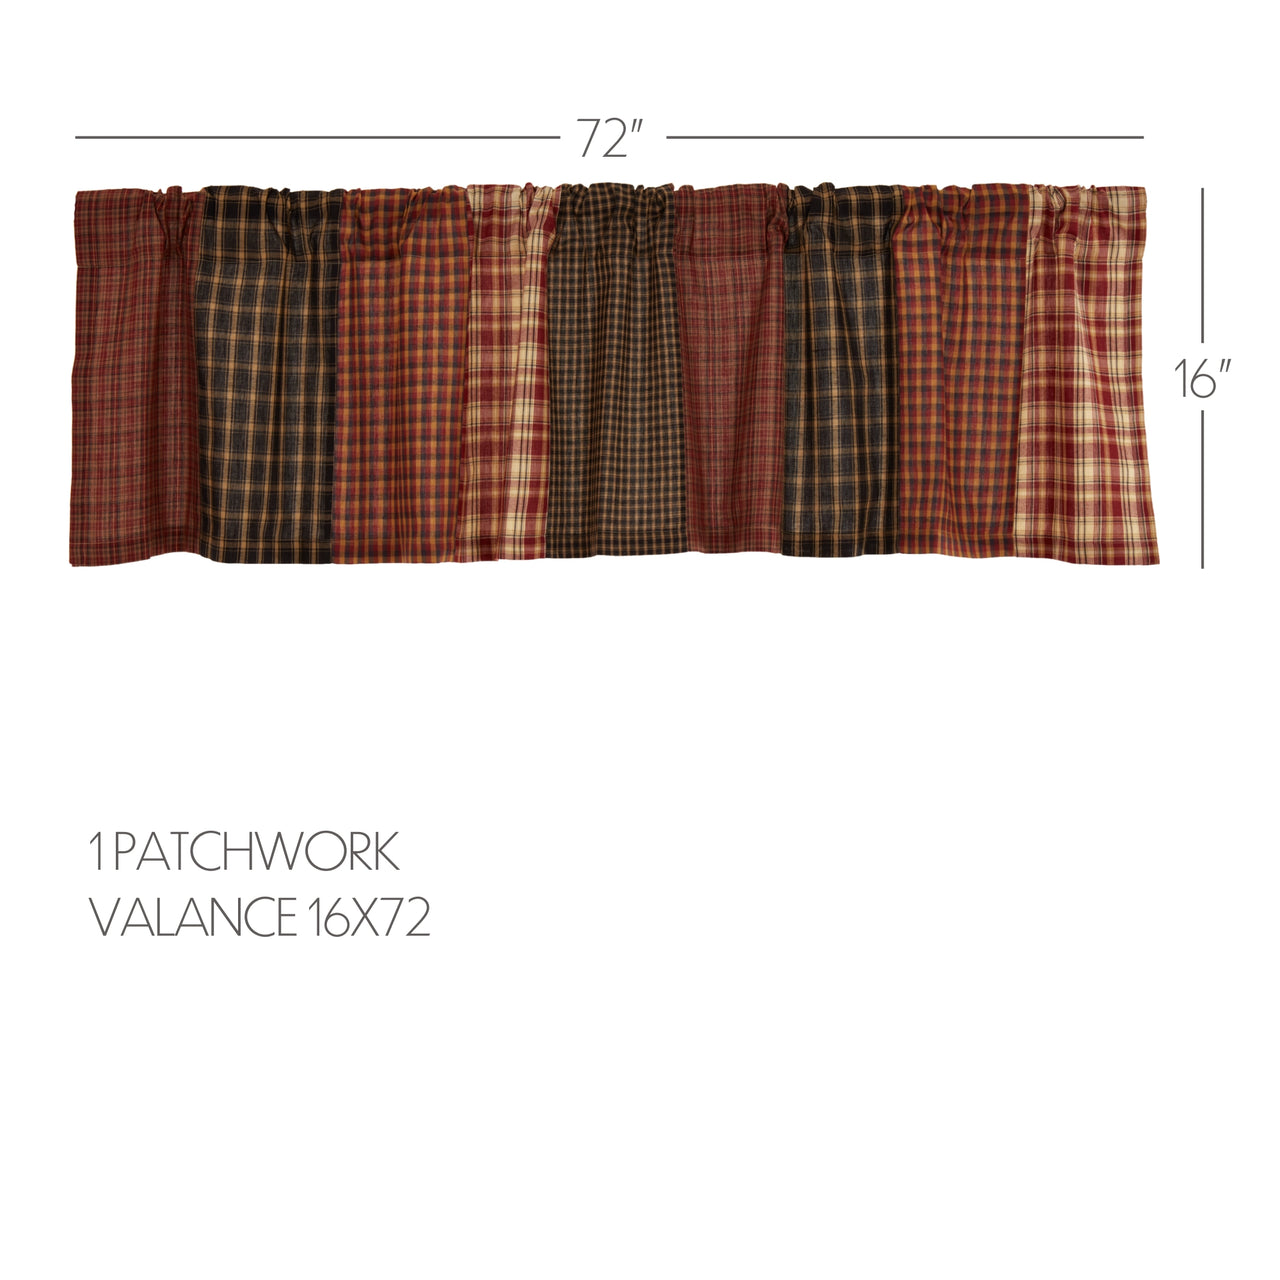 Beckham Patchwork Valance Curtain 16x72 VHC Brands